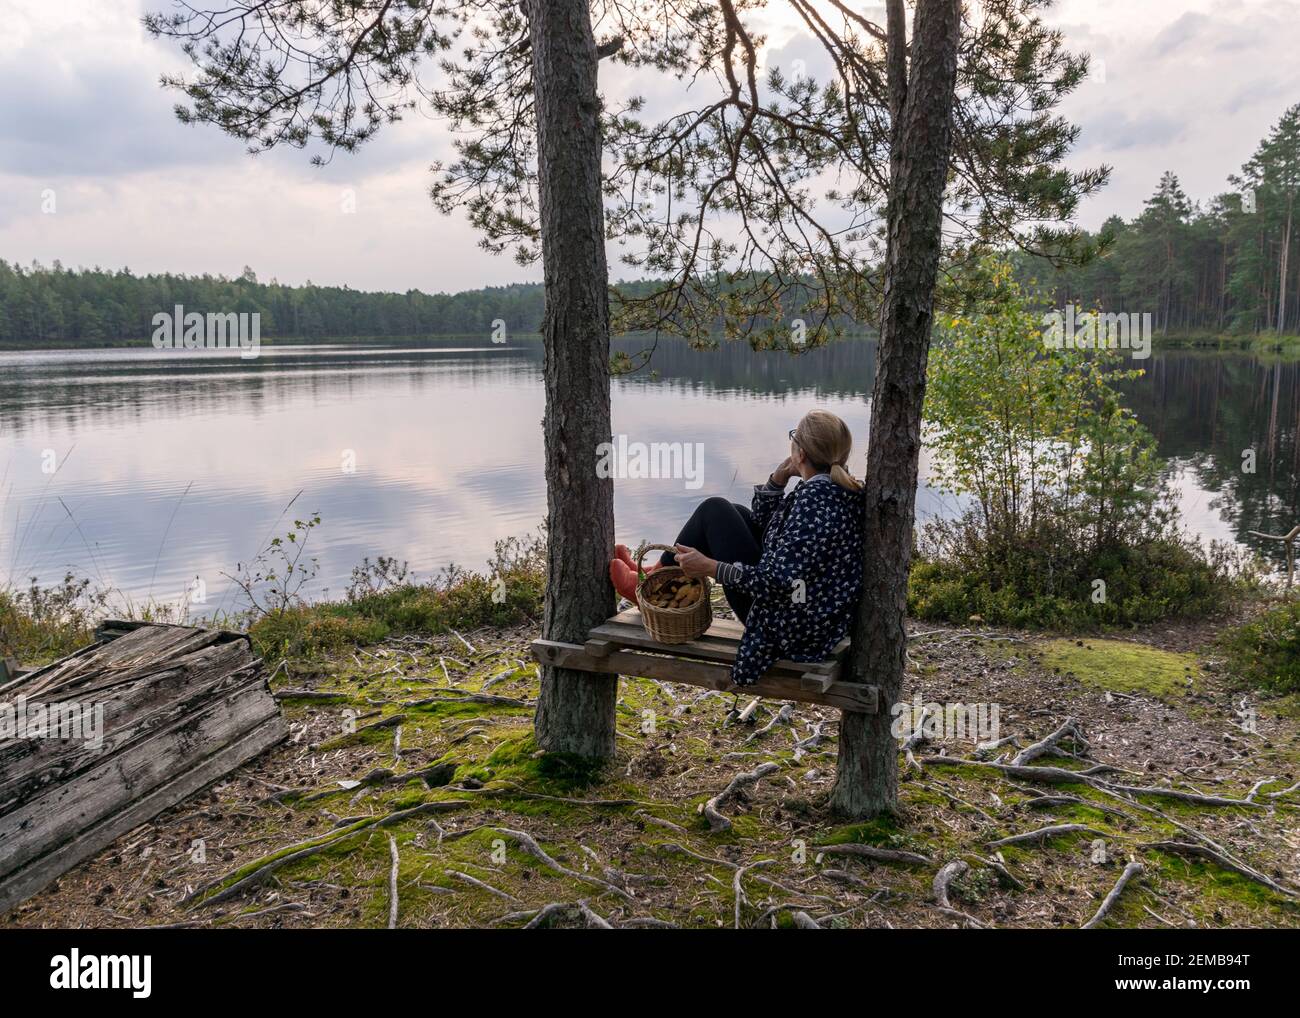 silhouette d'une femme assise sur un banc près du lac de la tourbière, petit panier de champignons dans ses mains, paysage du lac de la tourbière, temps d'automne Banque D'Images